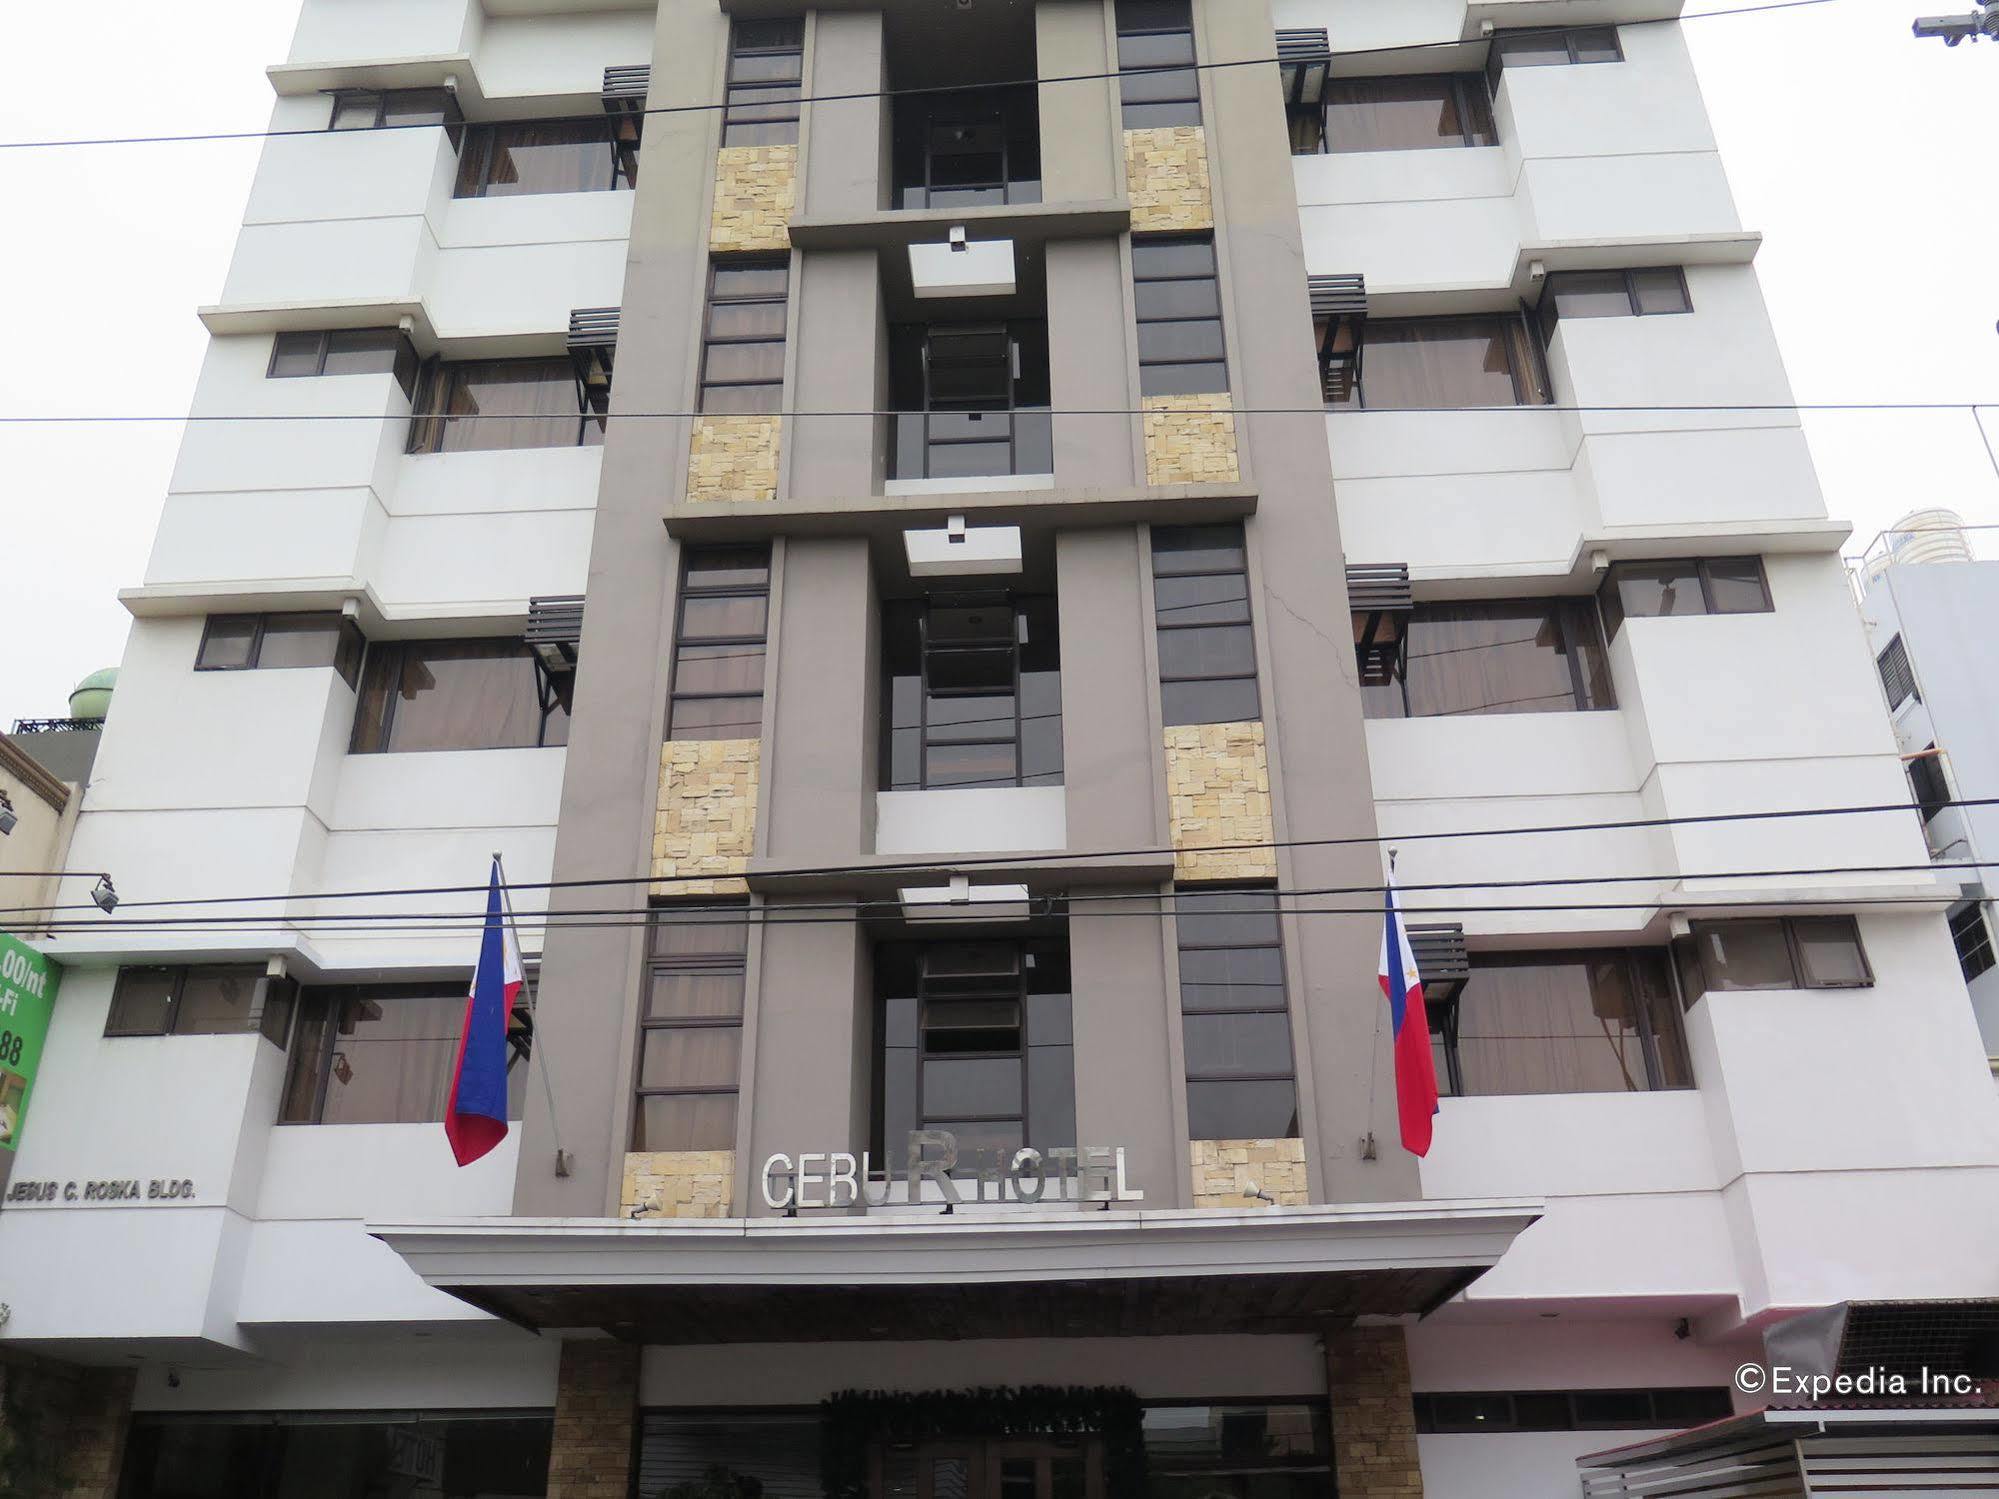 Cebu R Hotel Capitol Экстерьер фото